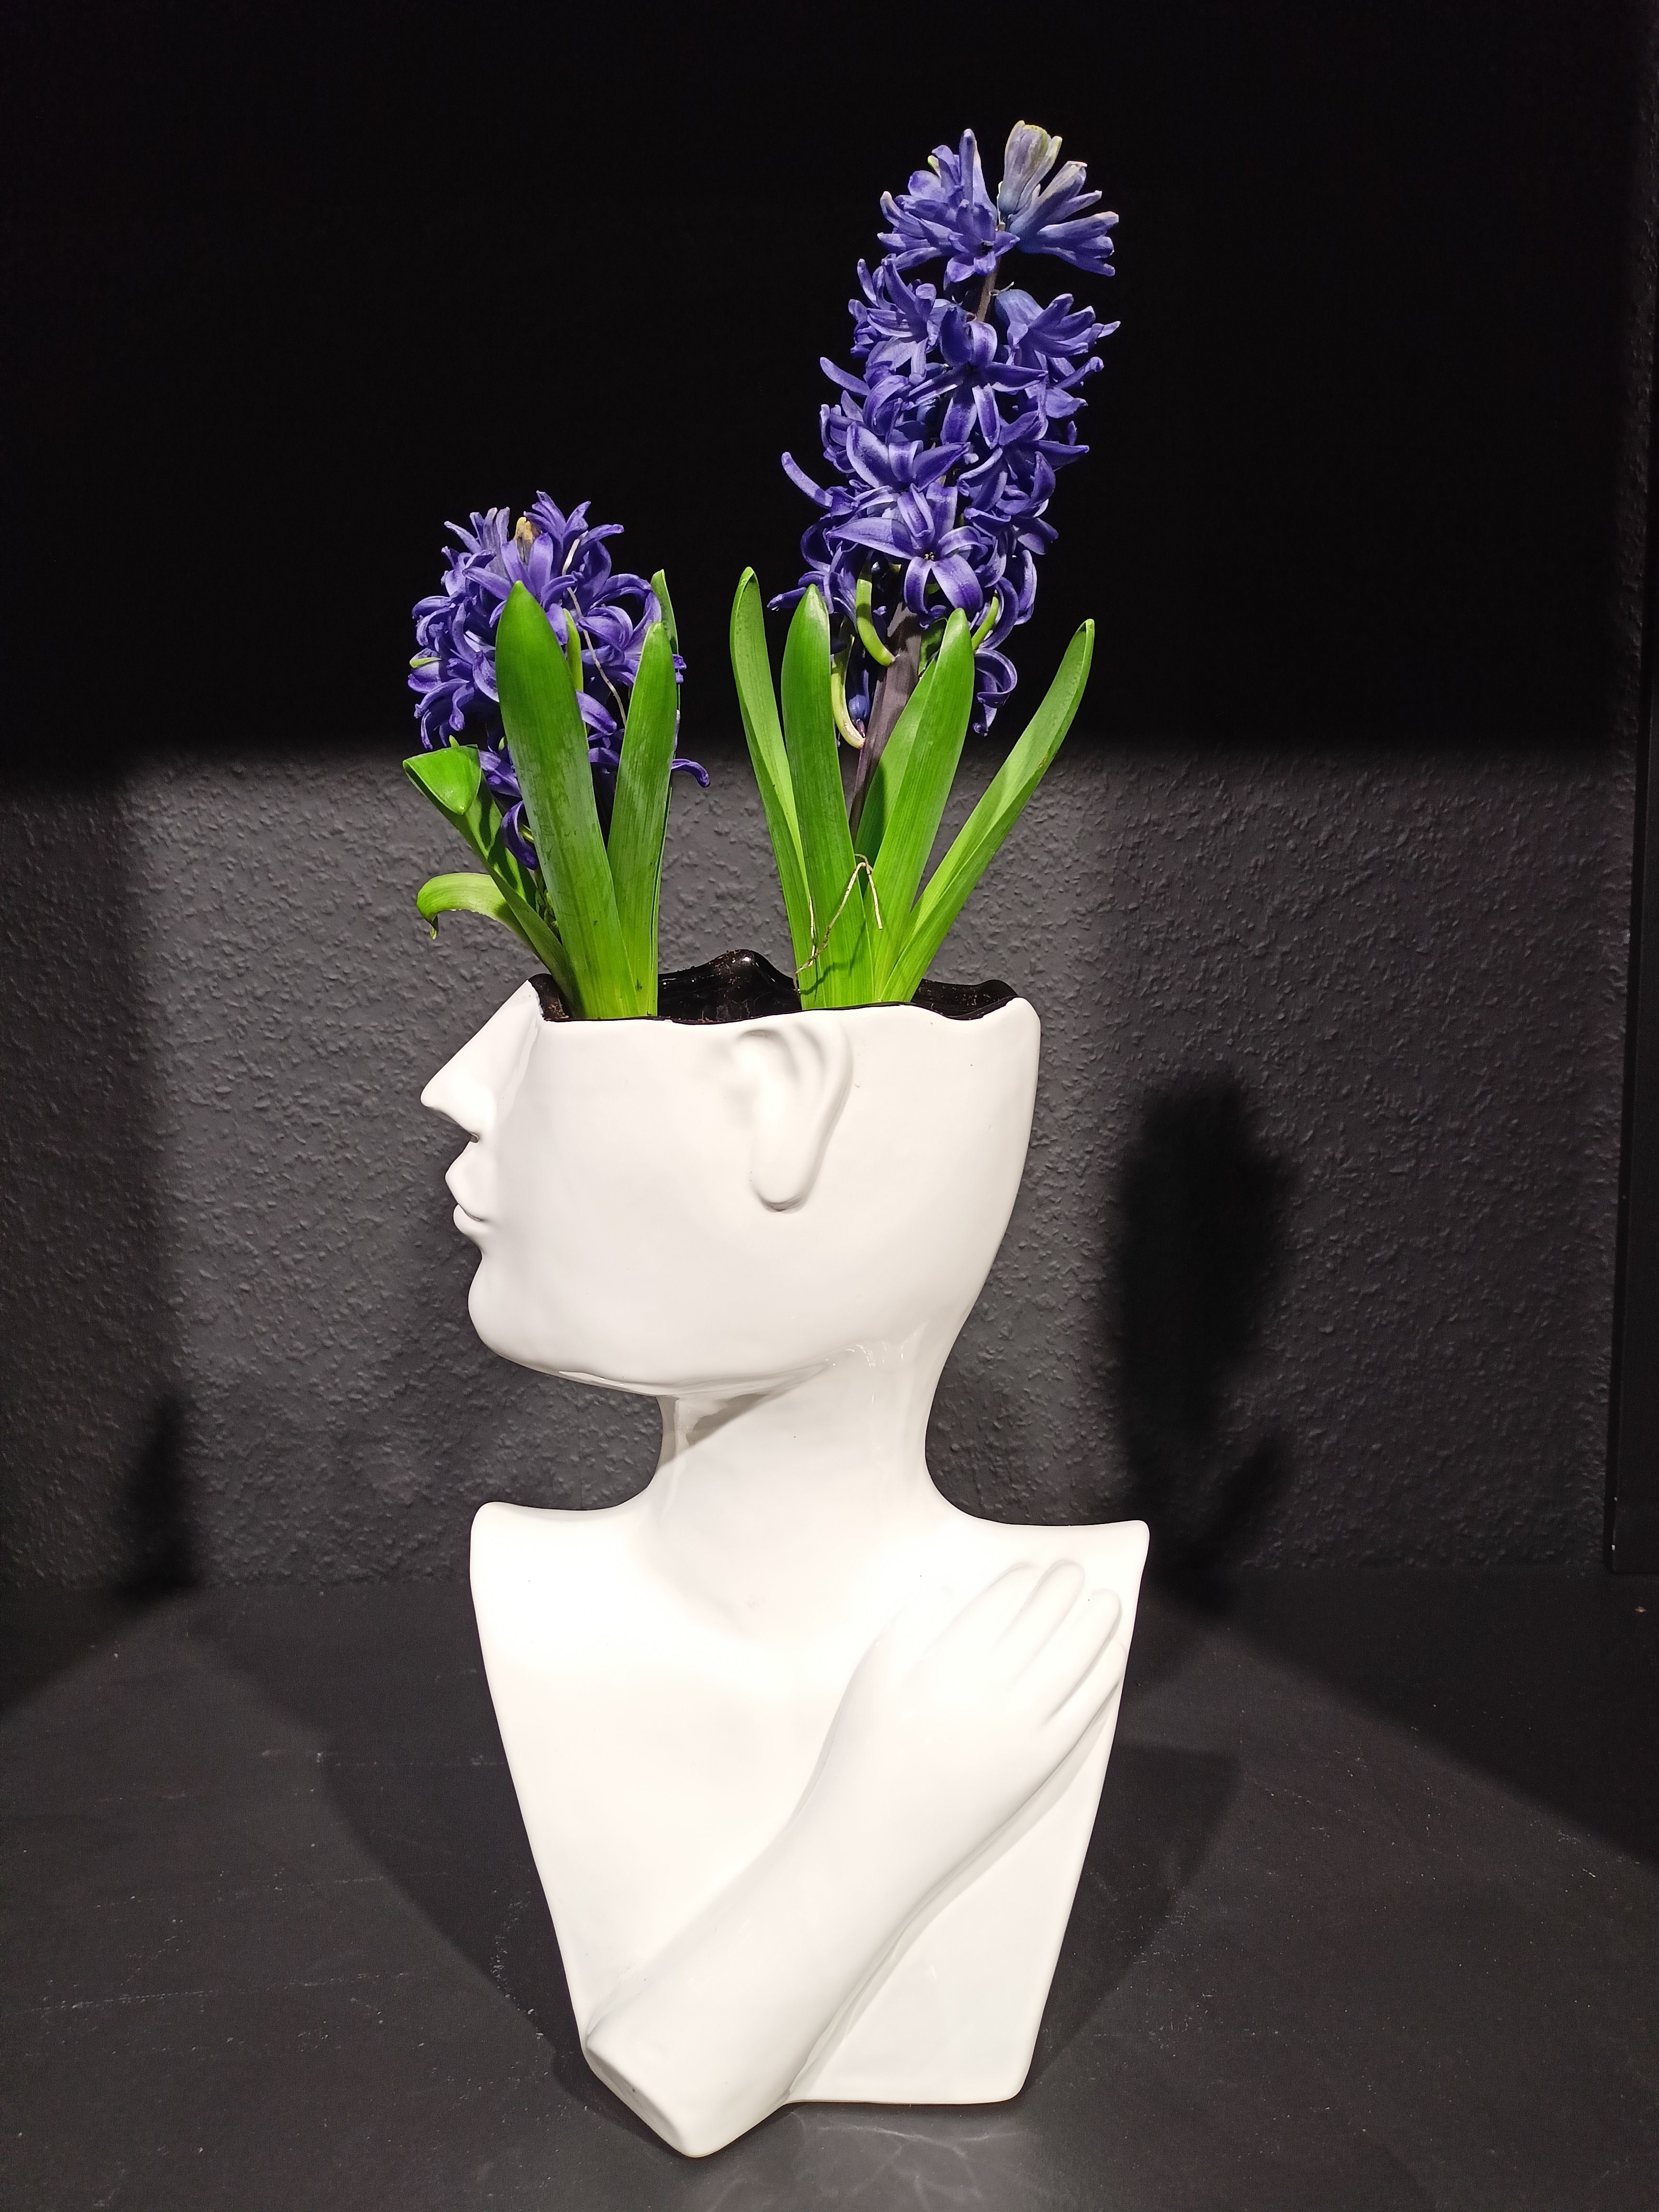 GlasArt Dekovase Vase cm Blumenvase 26 Gesicht Vase weiß Keramik Wohnzimmer